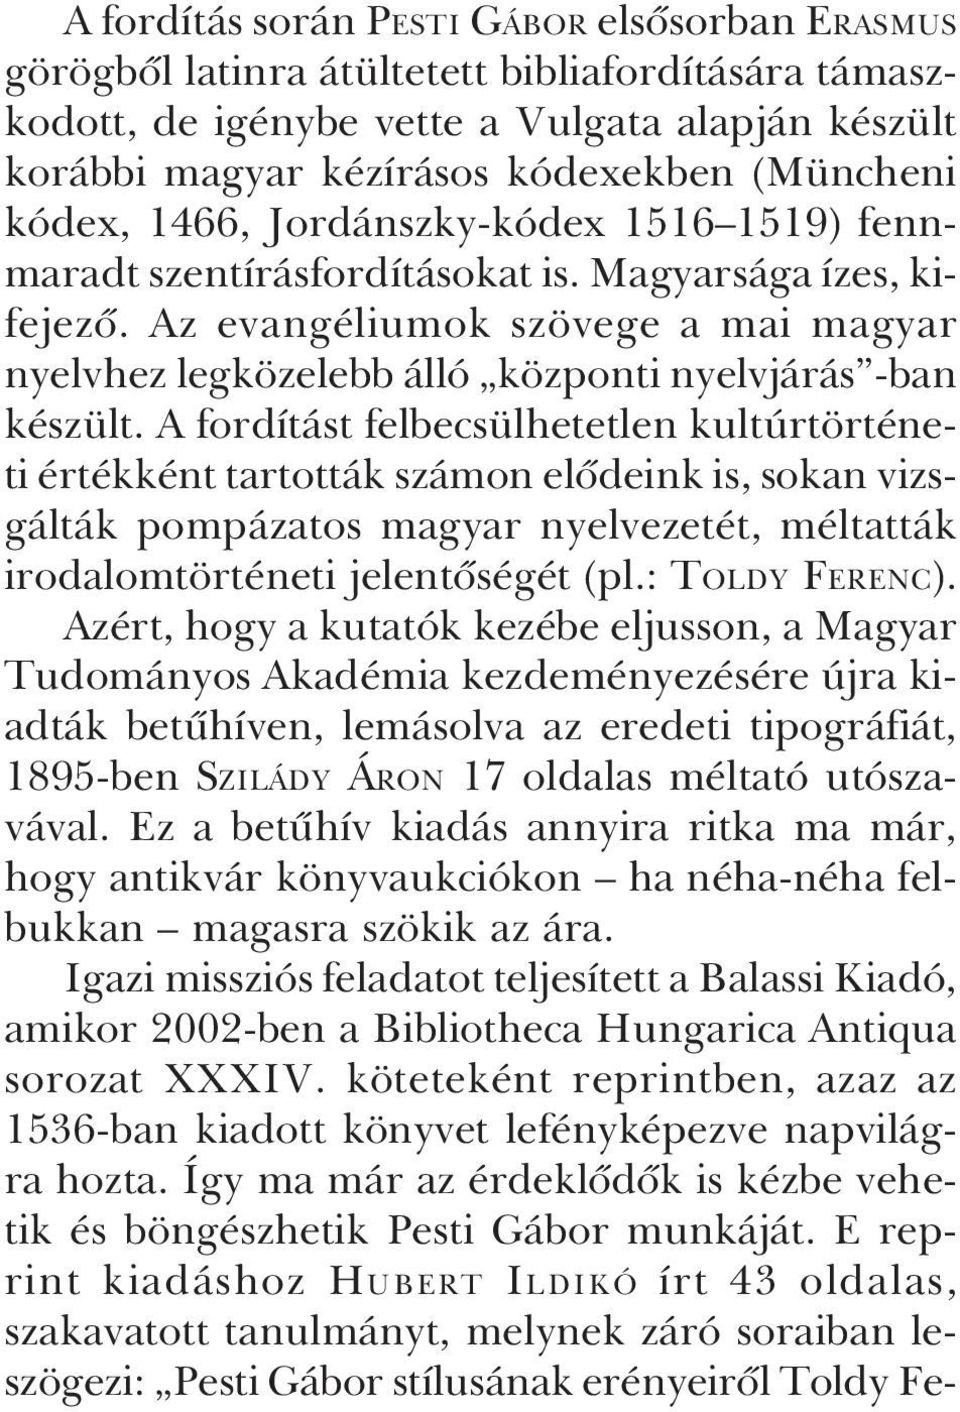 Az evangéliumok szövege a mai magyar nyelvhez legközelebb álló központi nyelvjárás -ban készült.